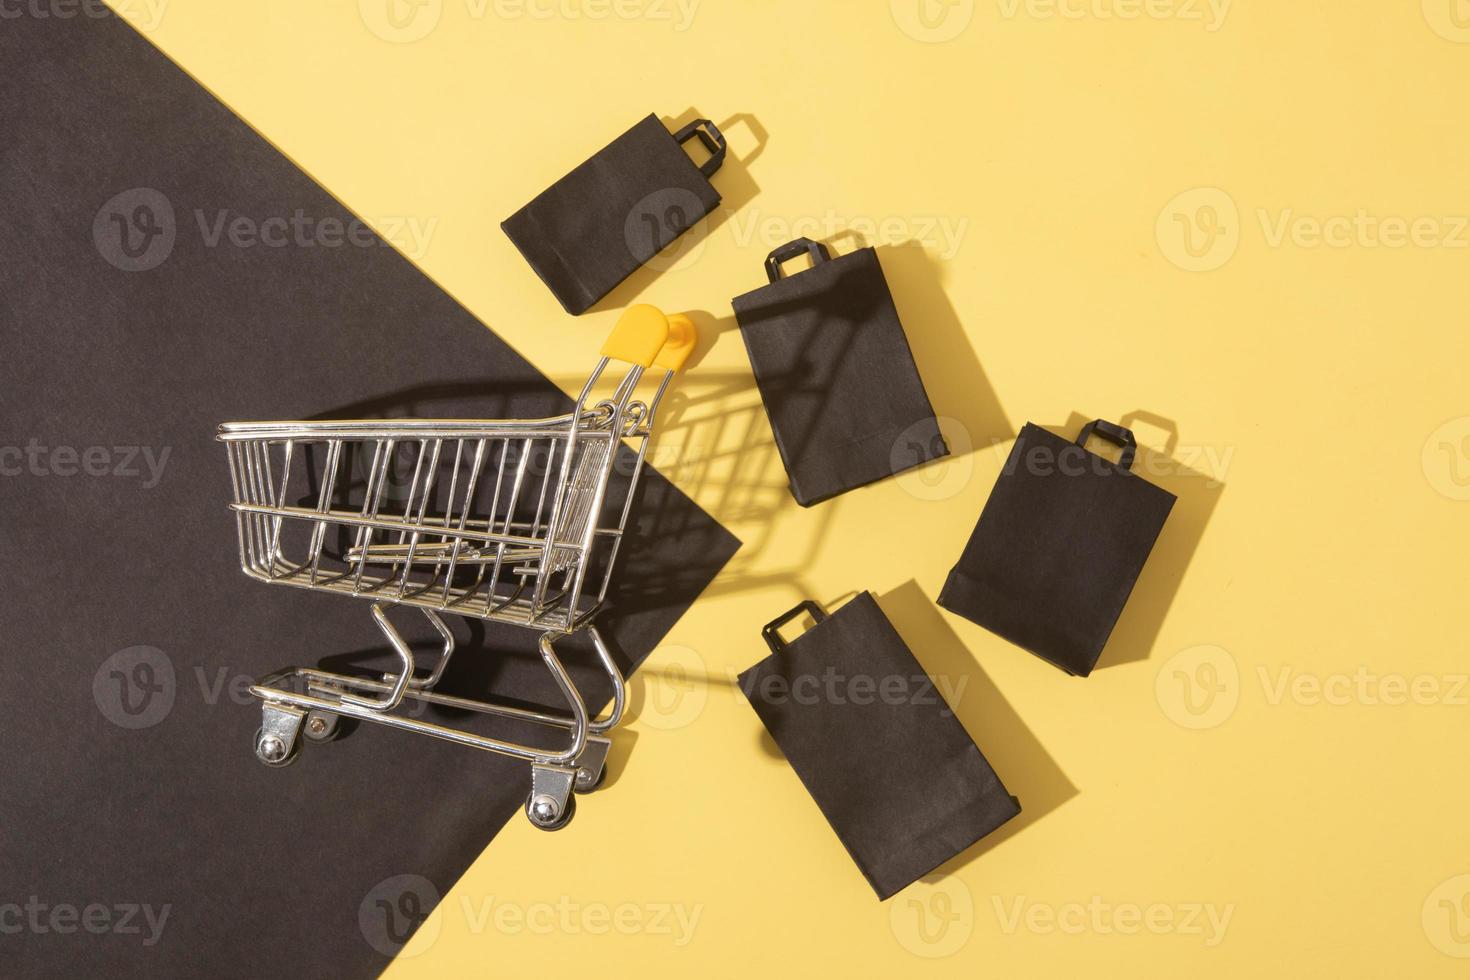 carrinho de supermercado em miniatura com sacolas de compras em promoção de sexta-feira preta em fundo amarelo foto